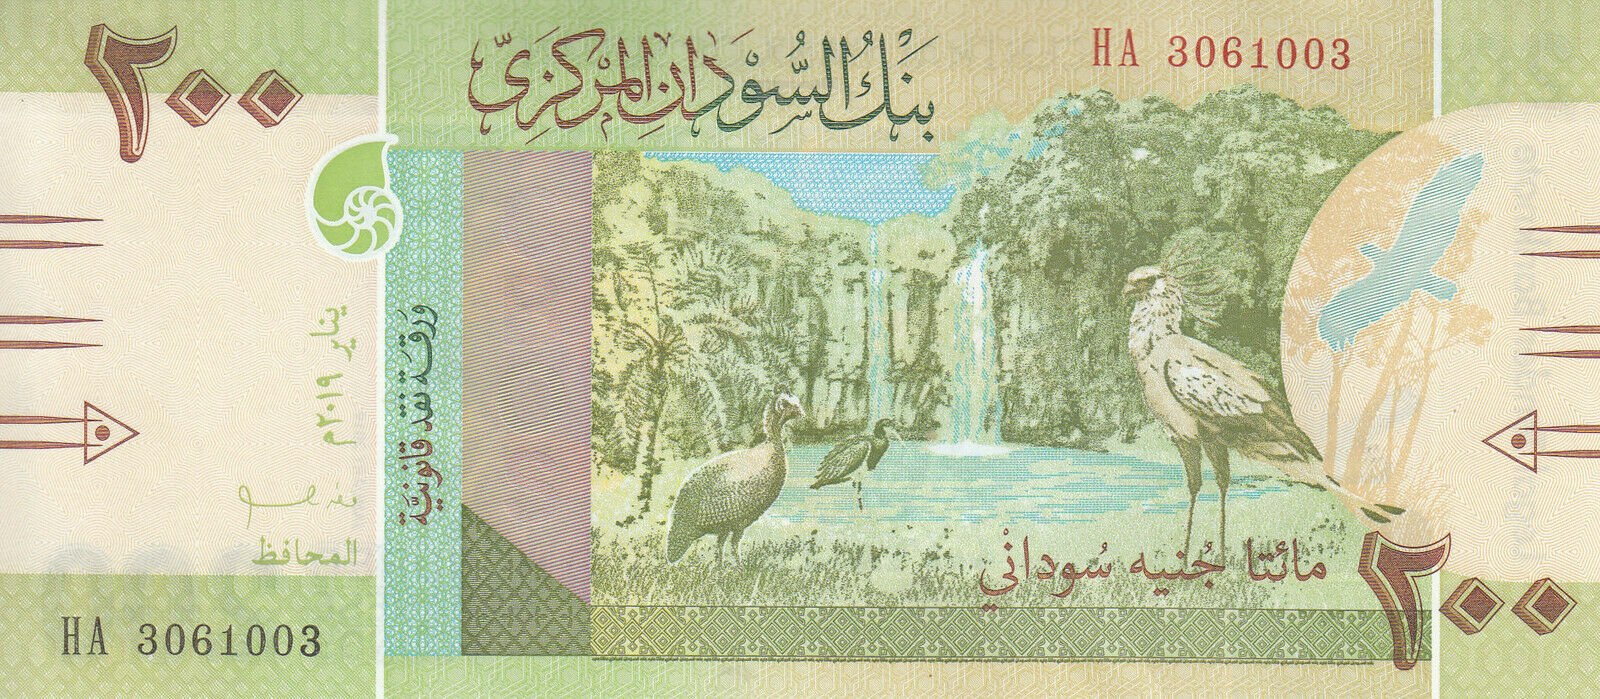 Sudan wydał nowy banknot obiegowy o nominale 200 funtów